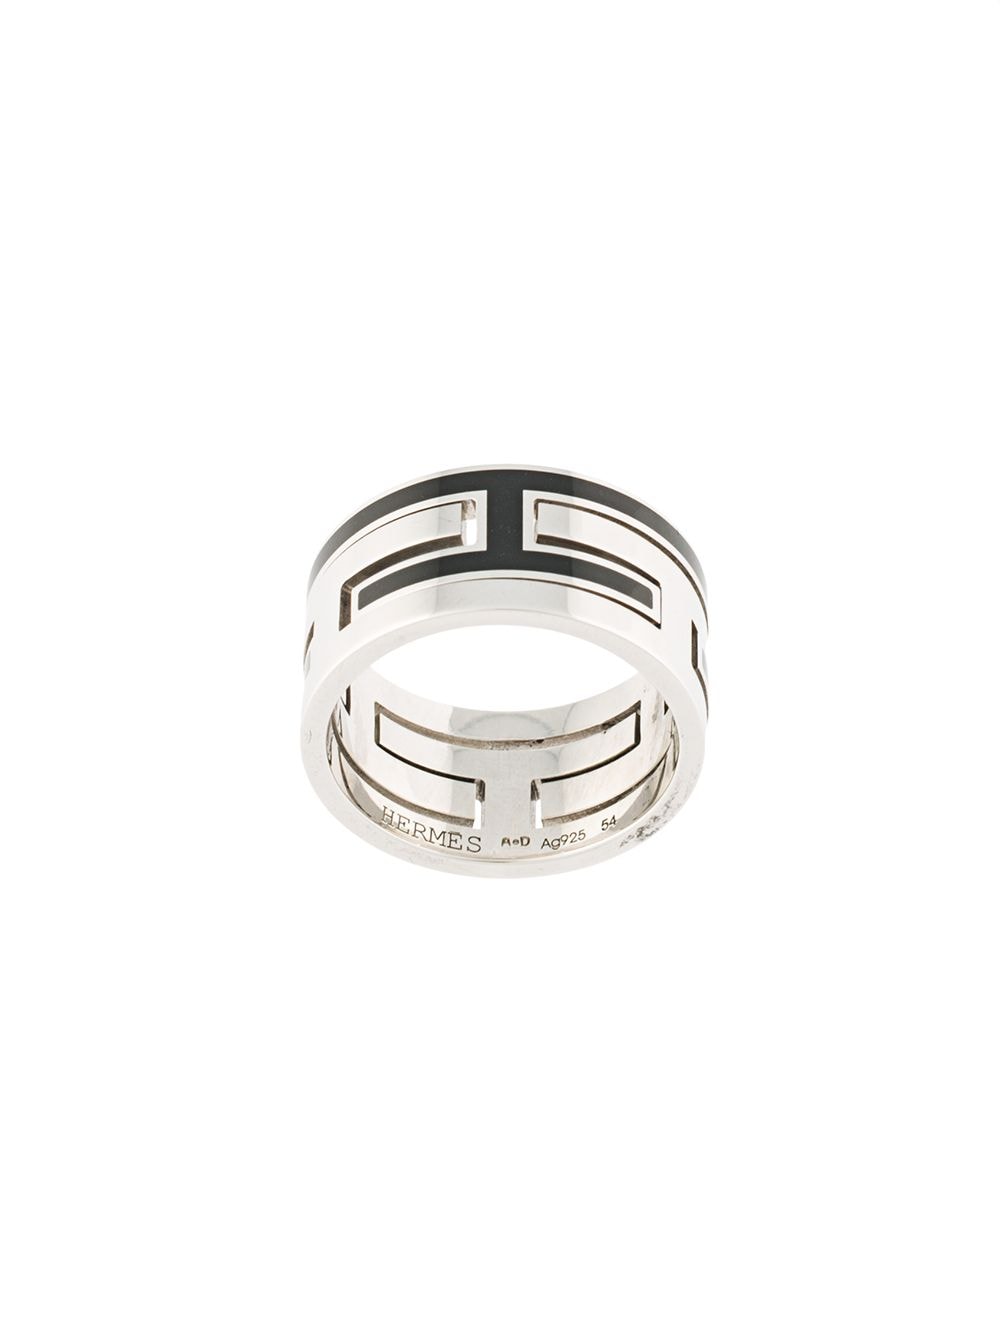 фото Hermès кольцо с монограммой